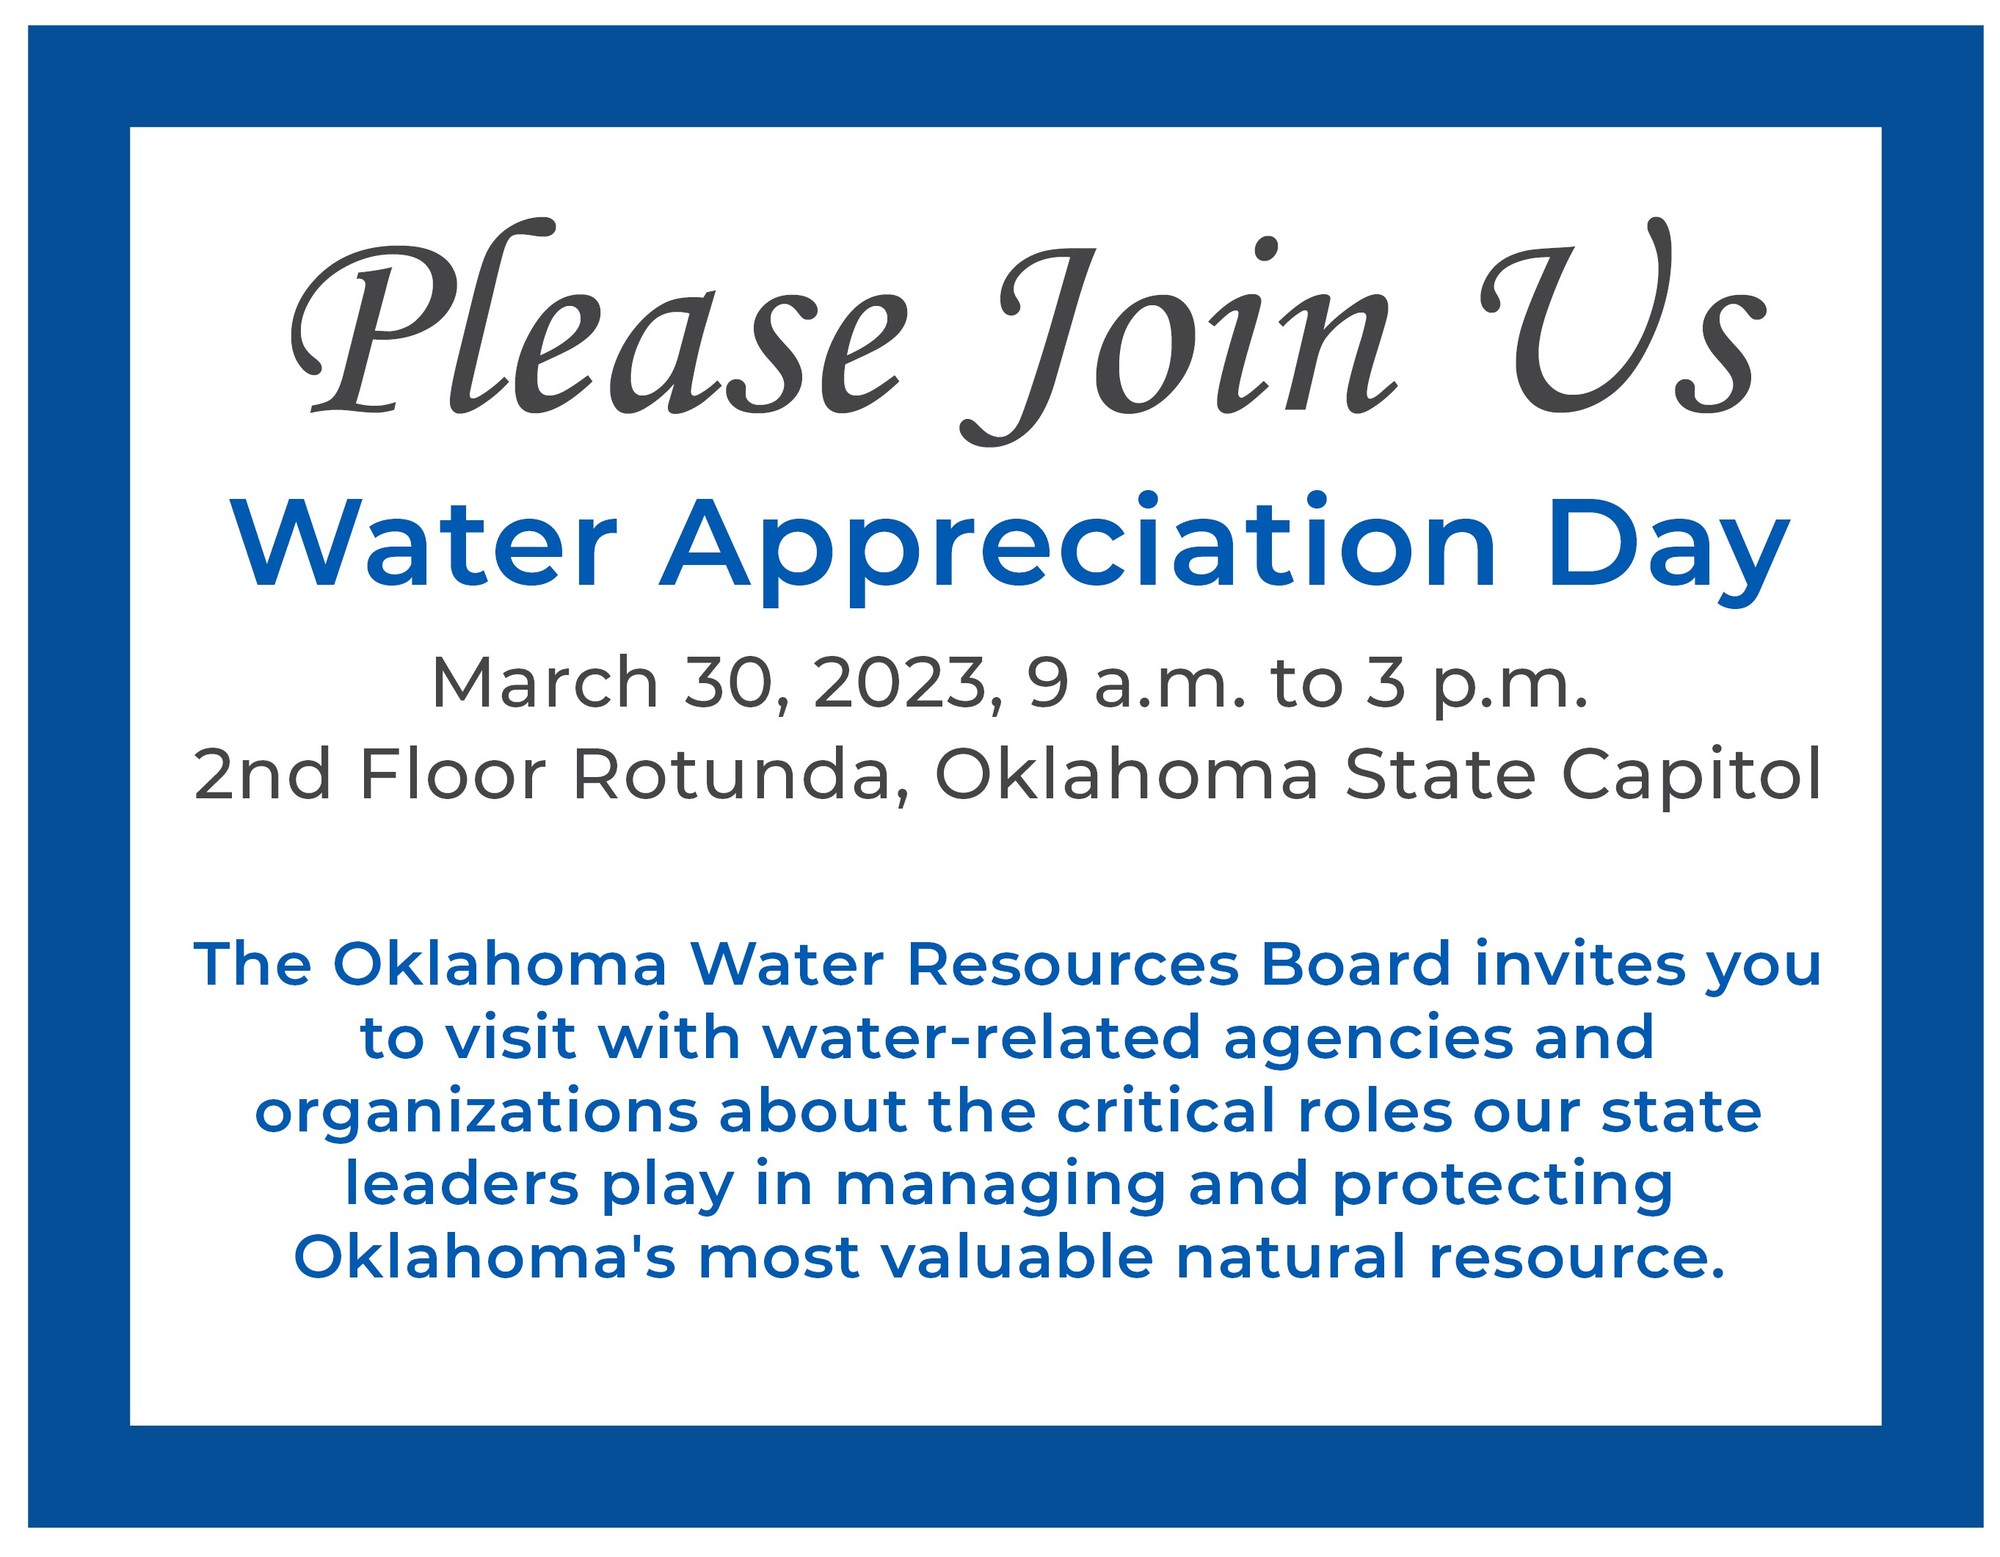 Water Appreciation Day invite 